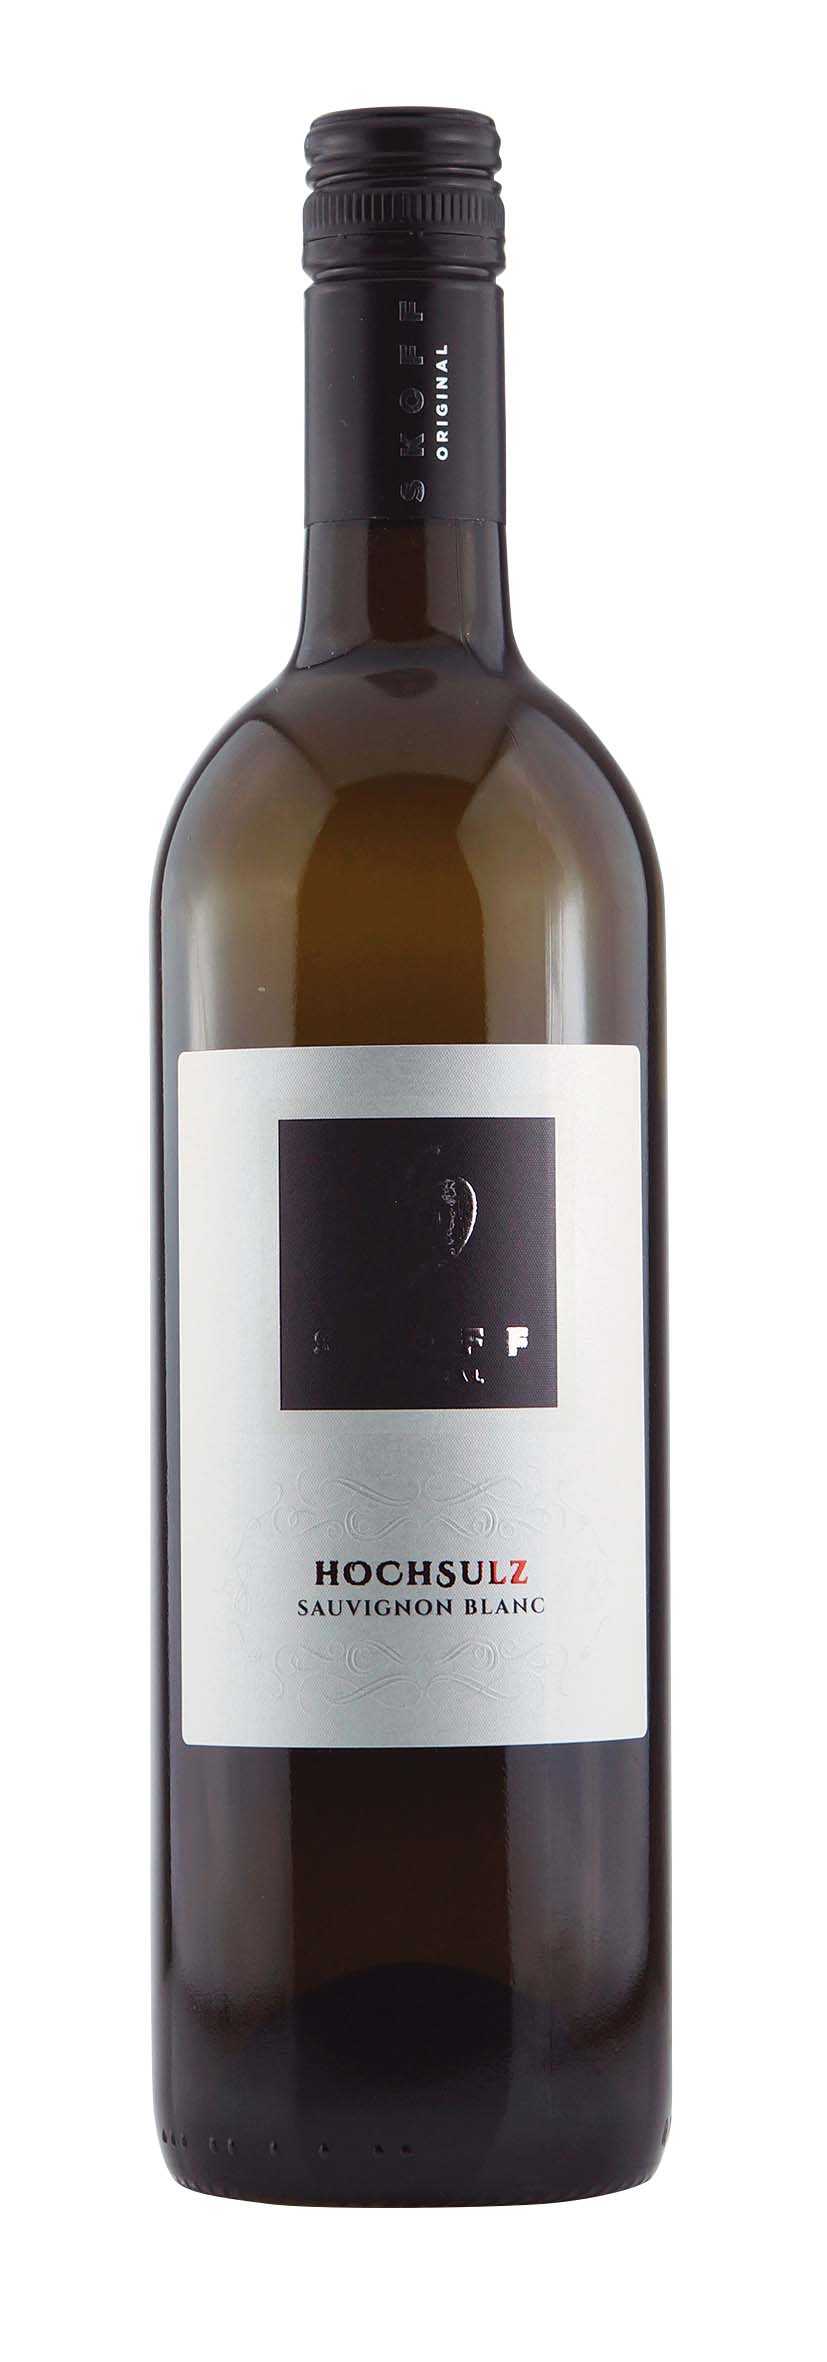 Südsteiermark DAC Ried Hochsulz Sauvignon Blanc Hochsulz 2015